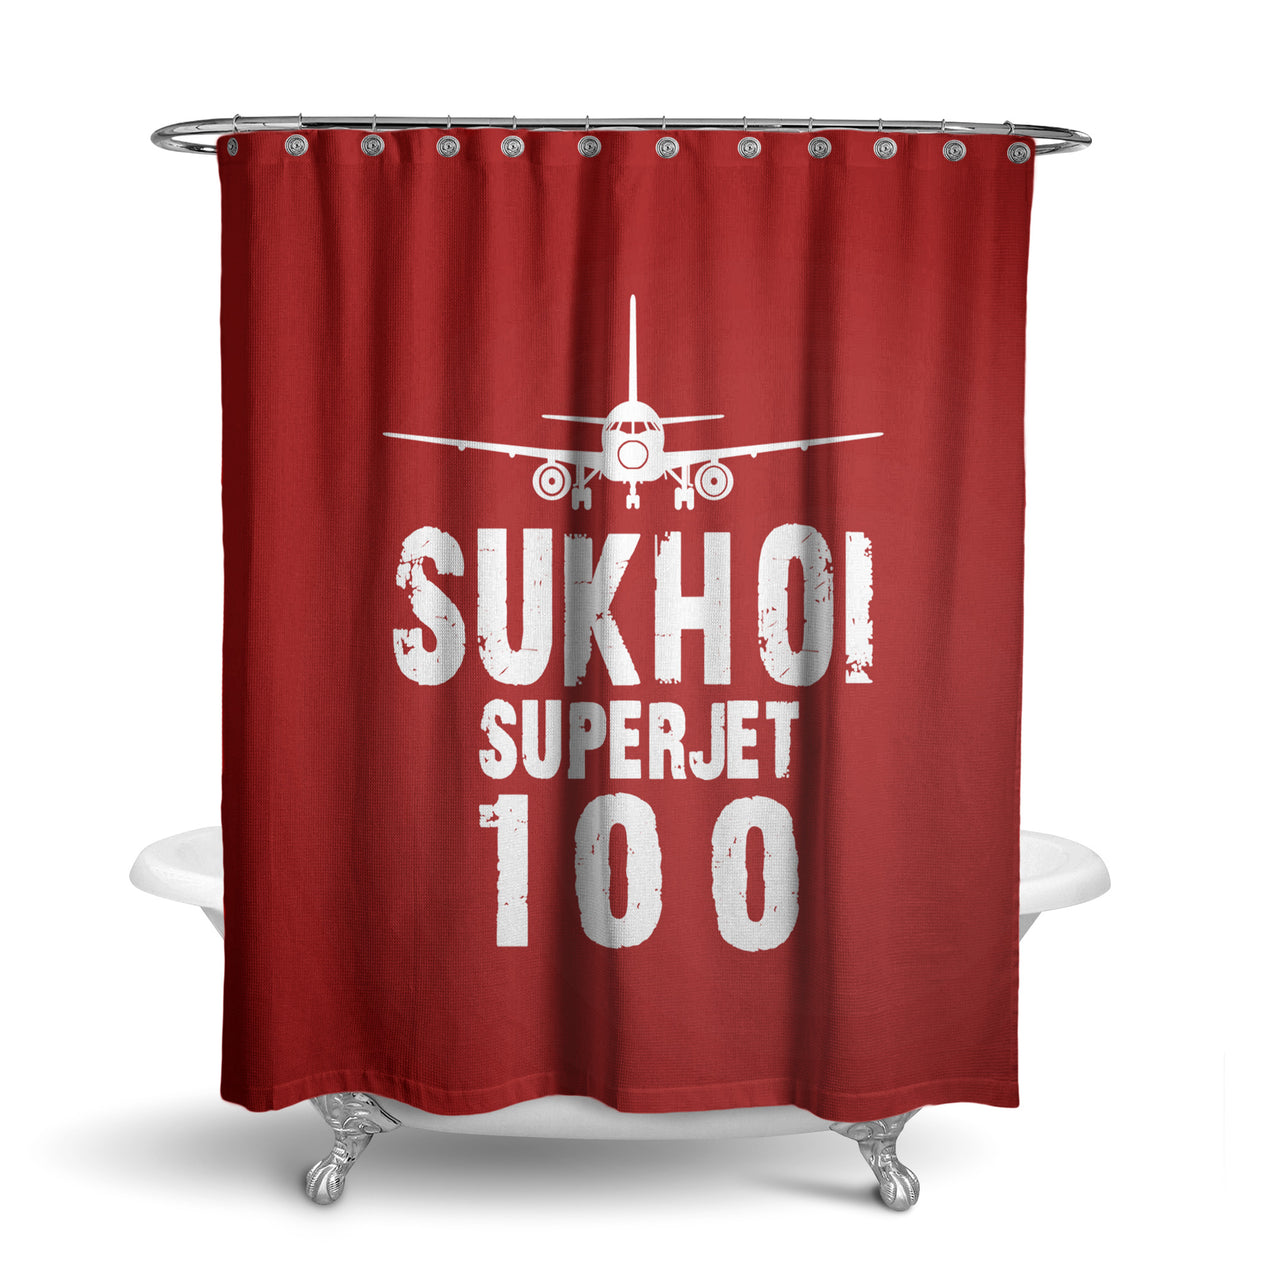 Sukhoi Superjet 100 & Plane Designed Shower Curtains